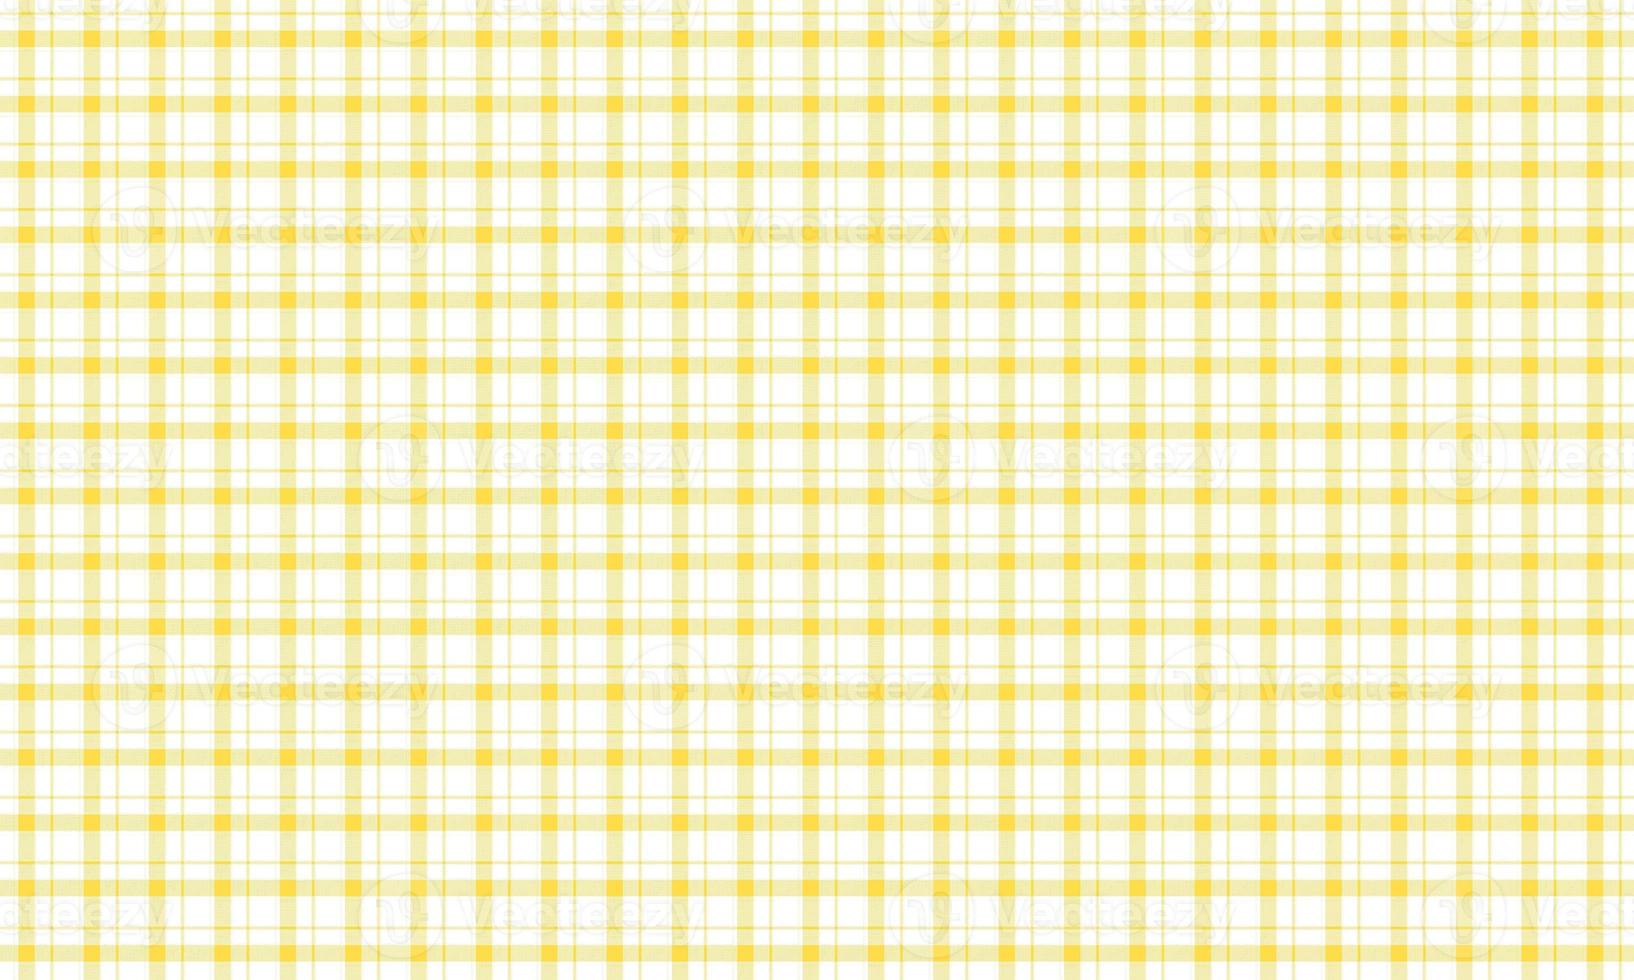 geel naadloos plaid patroon foto